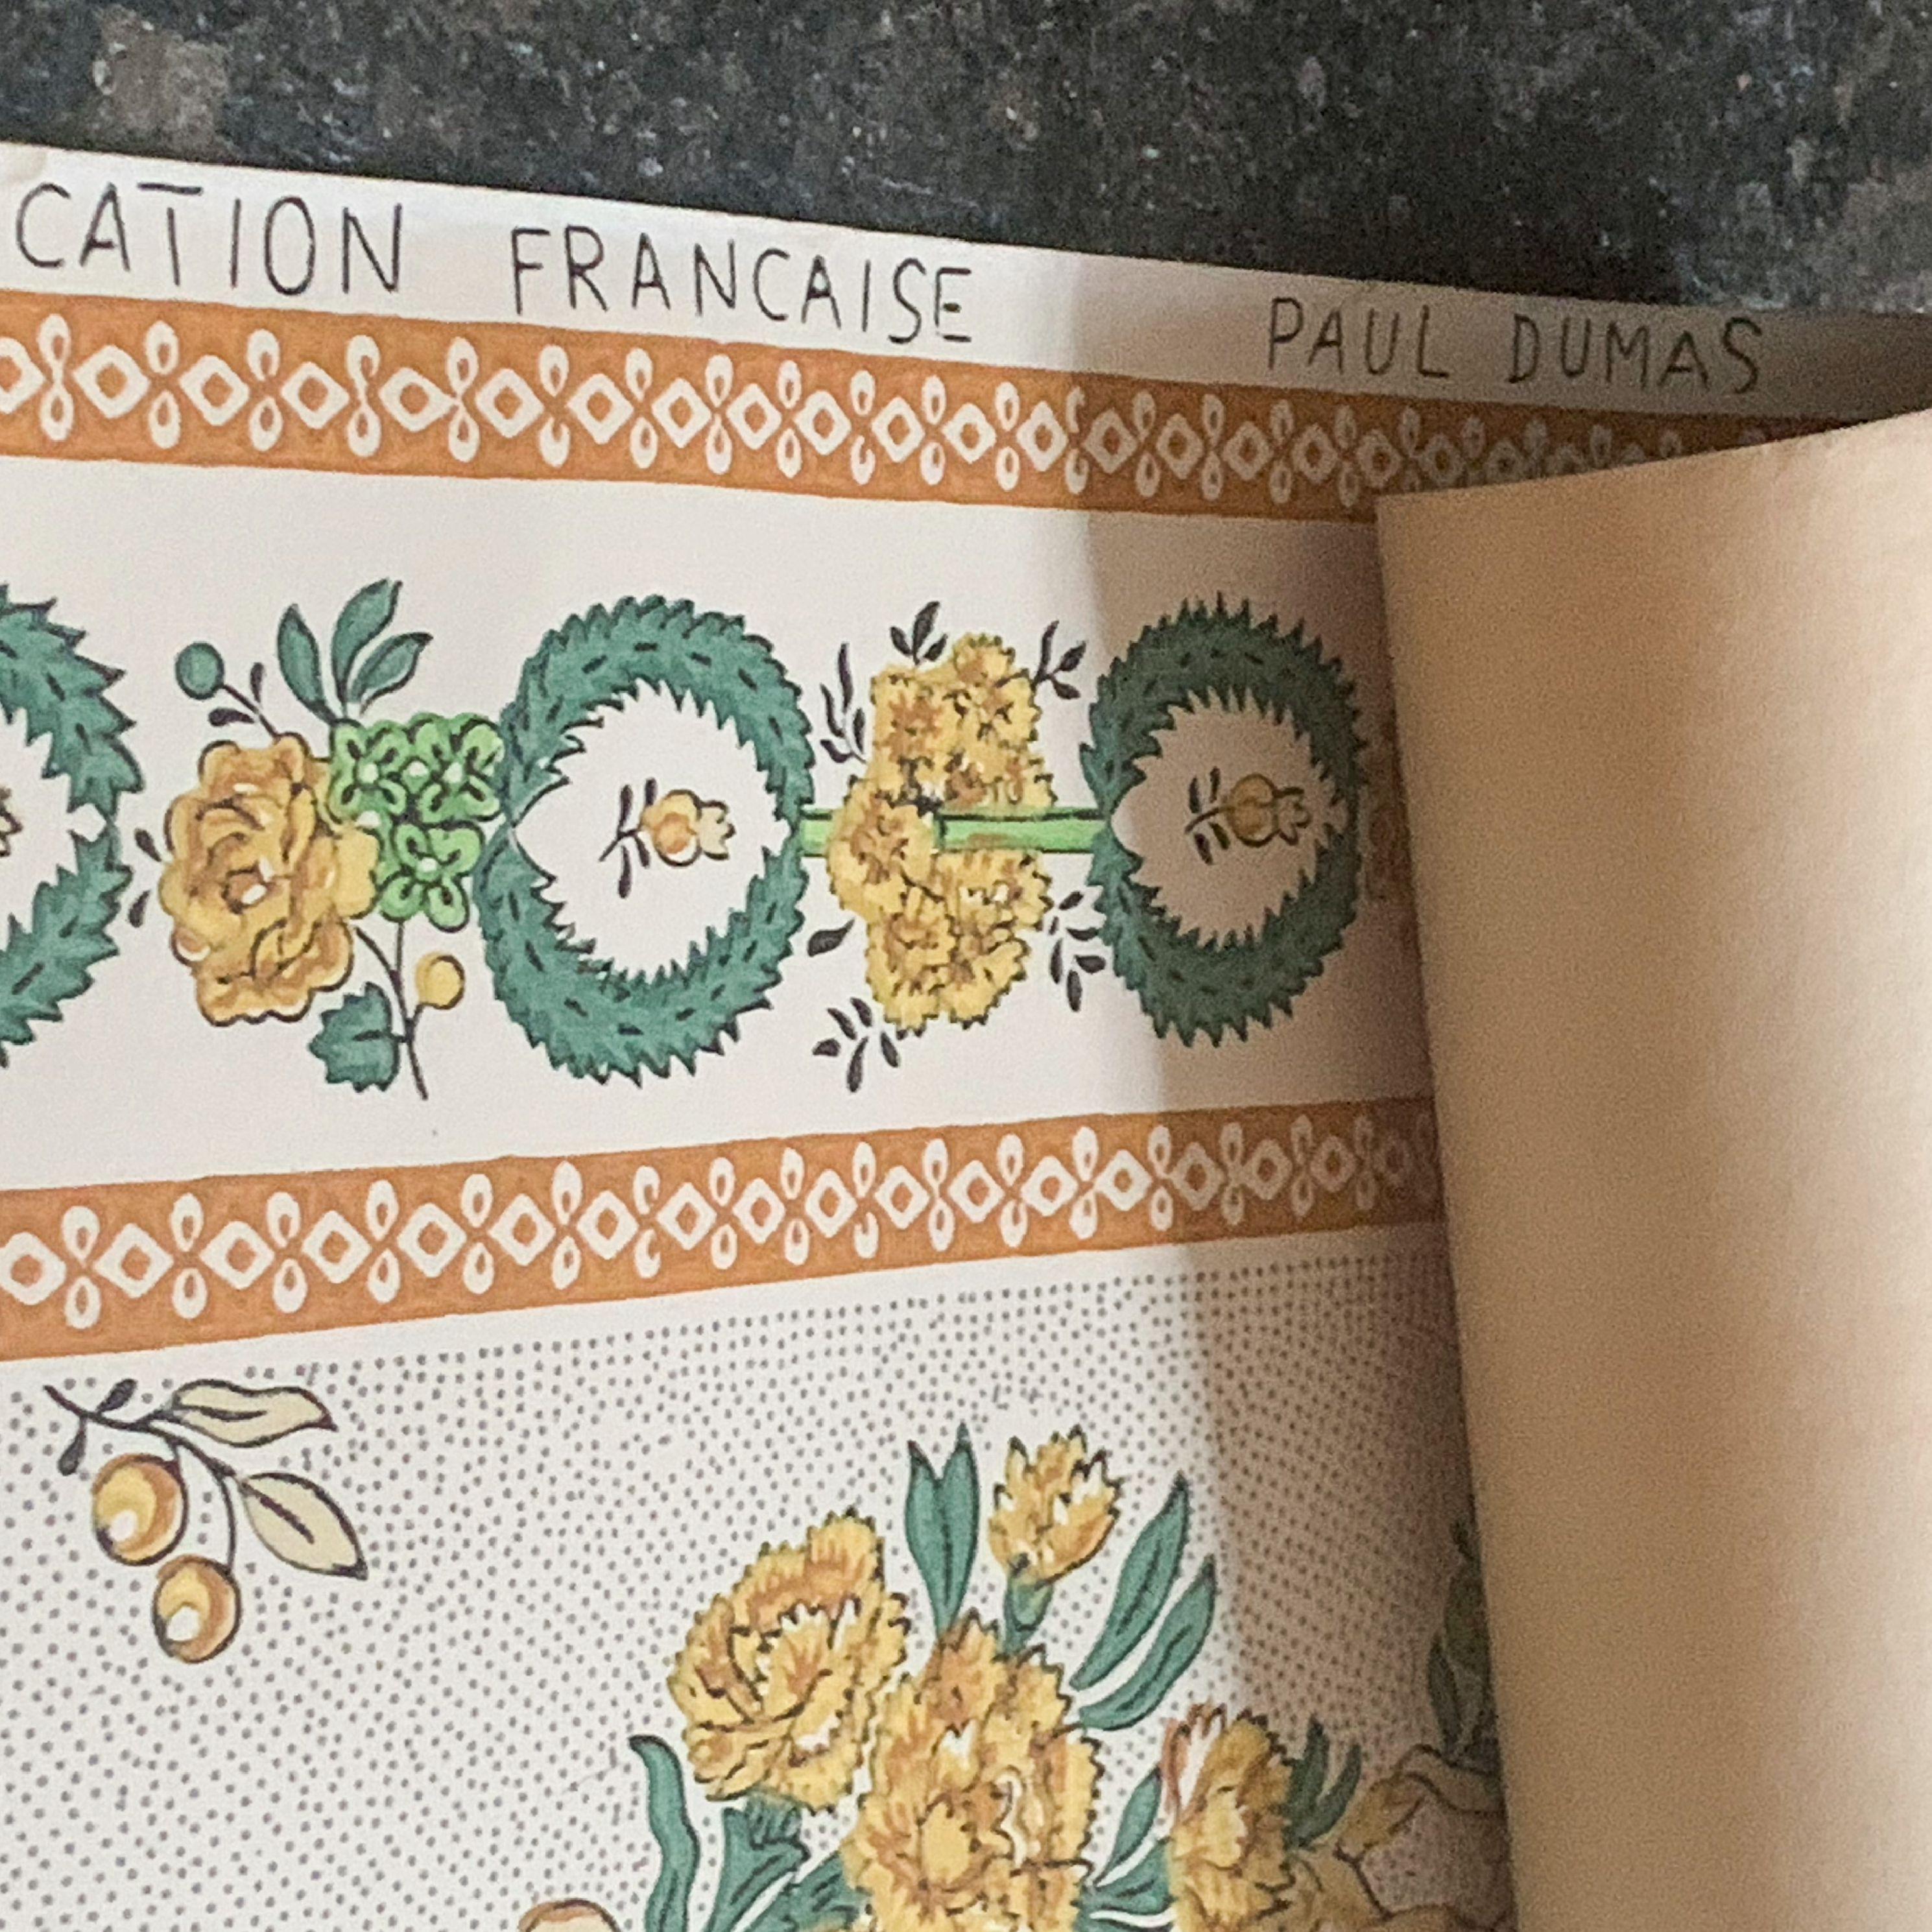 Antike französische Provinztapete von Paul Dumas mit Blumendruck, grün, gelb, cremefarben. Druck eines Blumenkranzes im edwardianischen Stil, um 1910. Äußerst selten. 9,8 laufende Meter. Dies ist ein Originalentwurf und eine Originalproduktion von